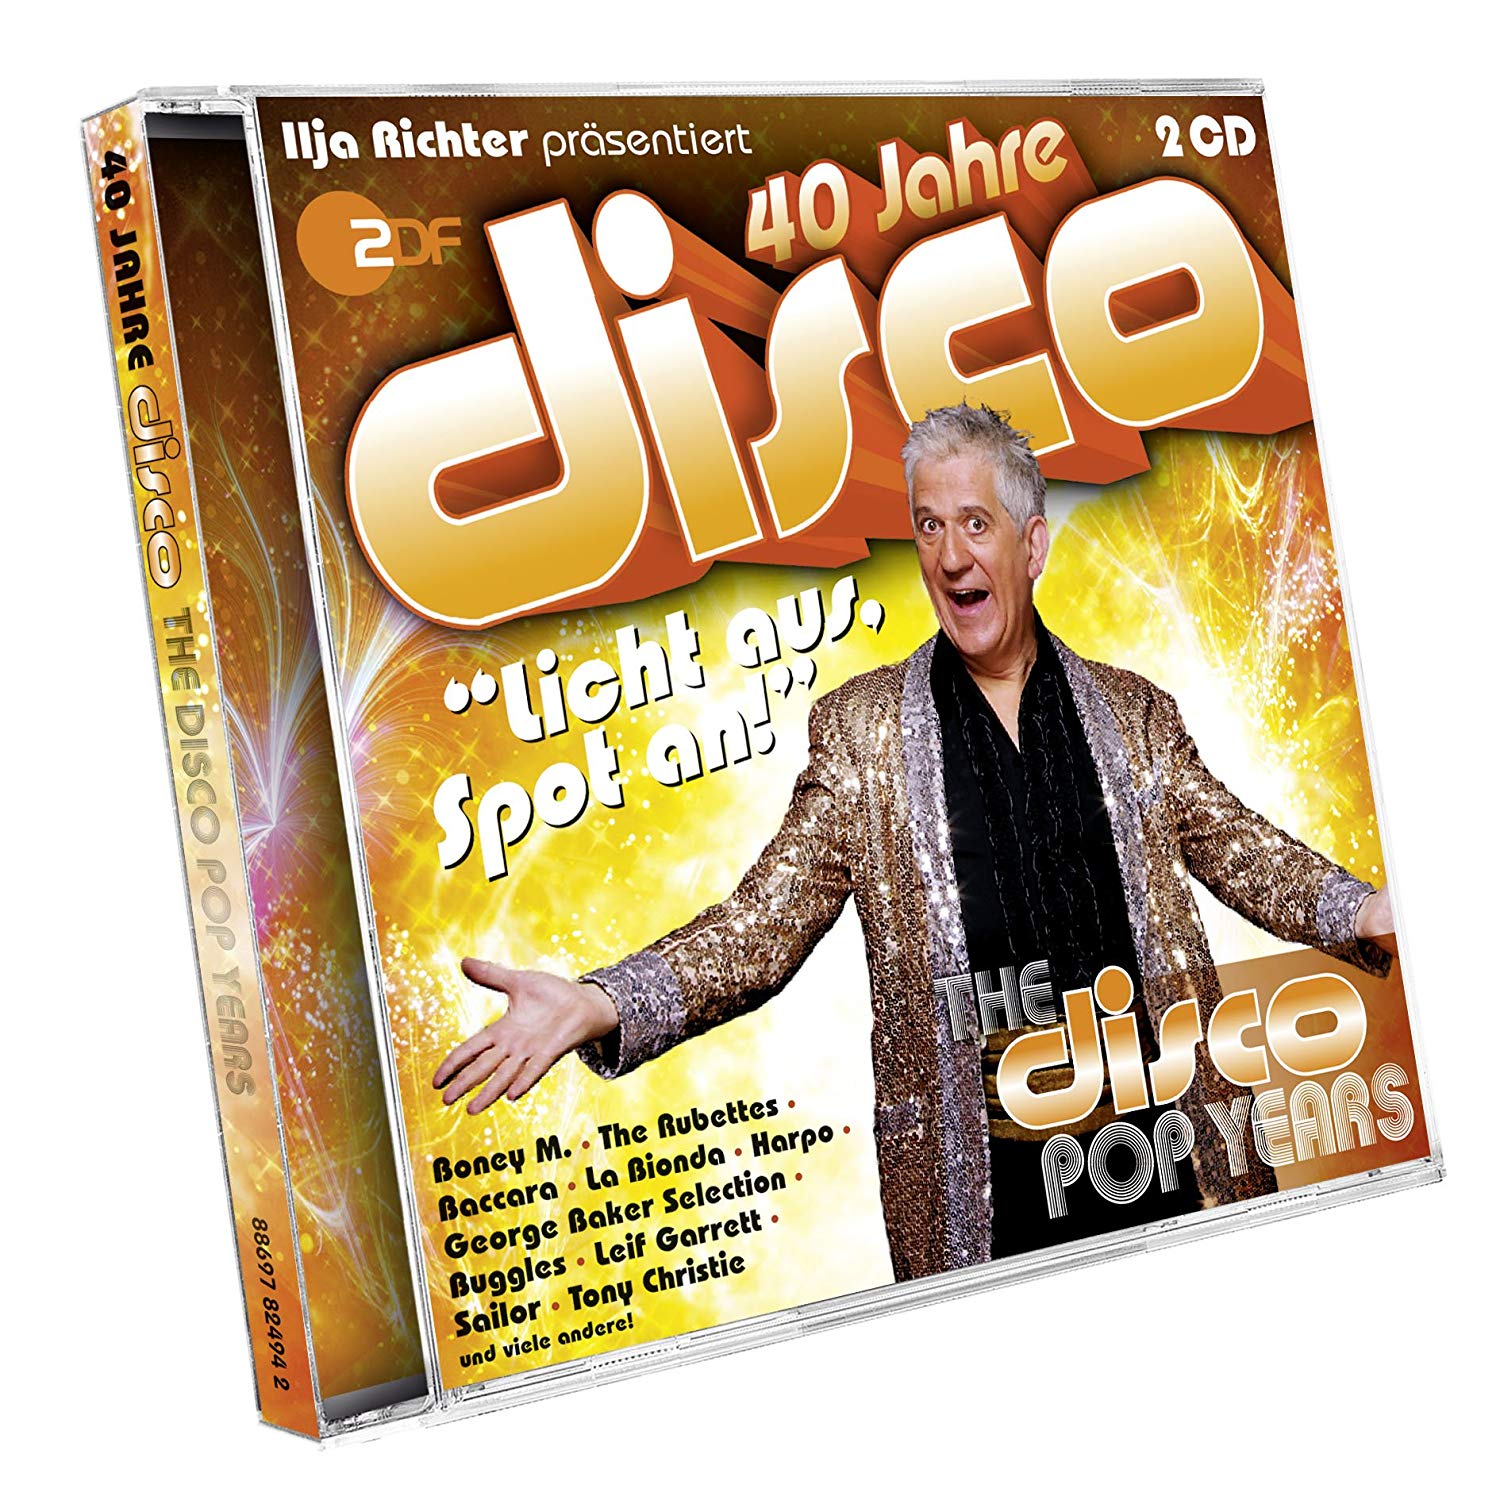 Золотая коллекция диско. 40 Jahre. 40 Jahre Disco Vol.9 - delicious Disco. Немецкий музыкальный канал ZDF Disco. Flac 2011